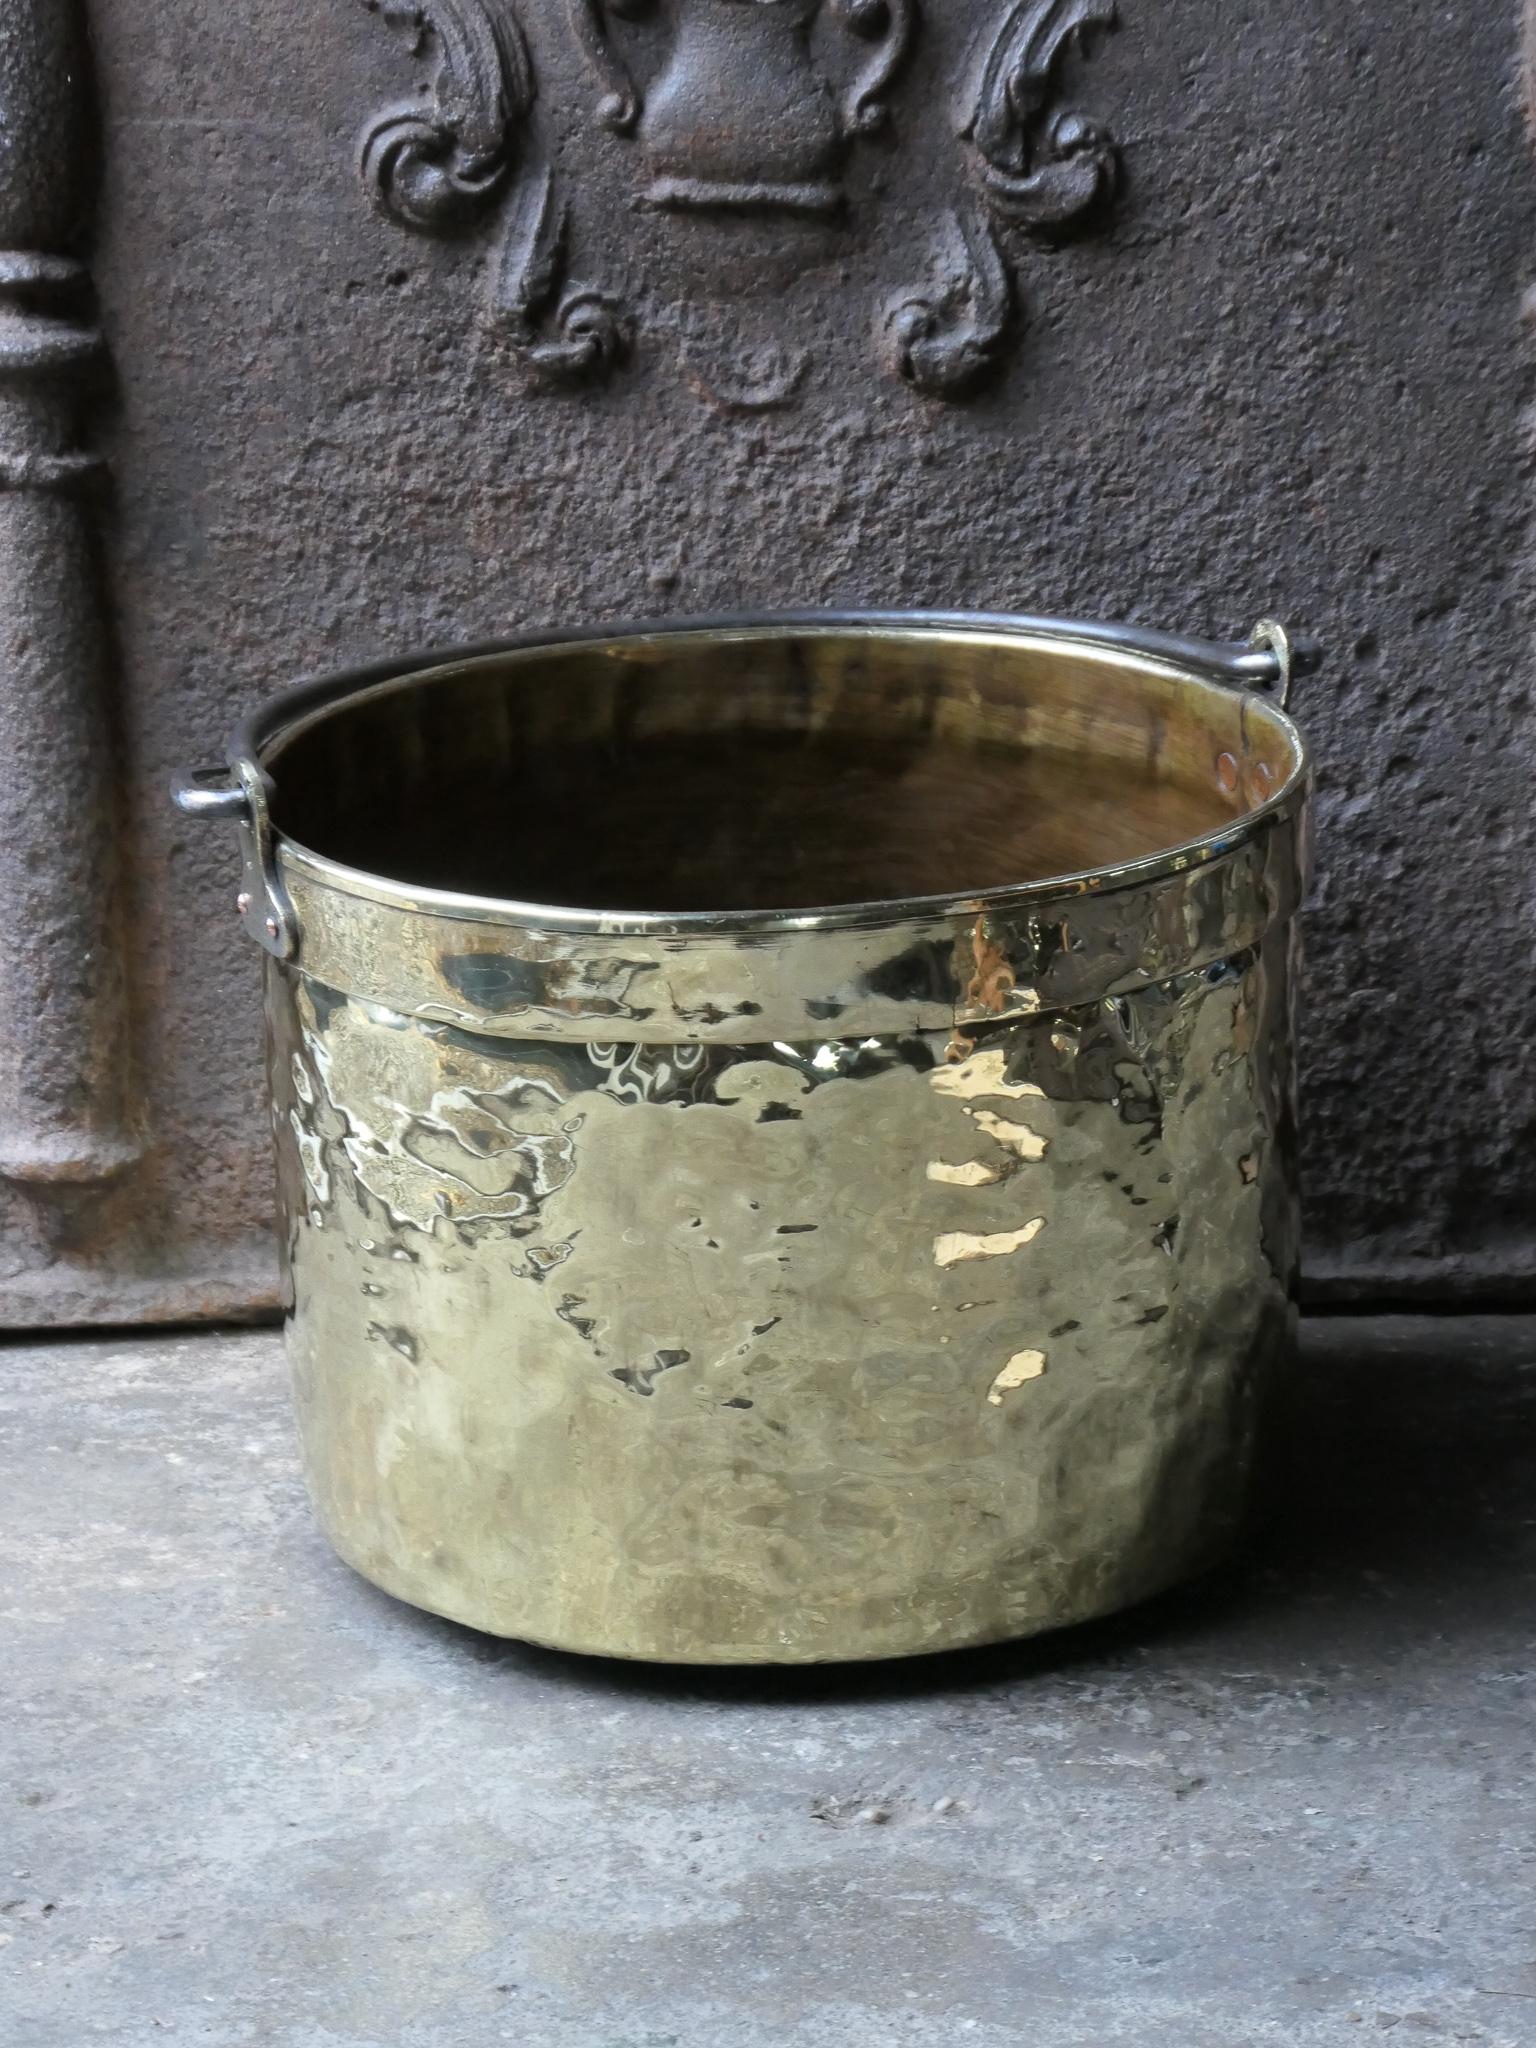 Panier à bûches hollandais du 18e siècle. Le panier à bois est fabriqué en laiton poli et possède une poignée en fer forgé. Également appelé 